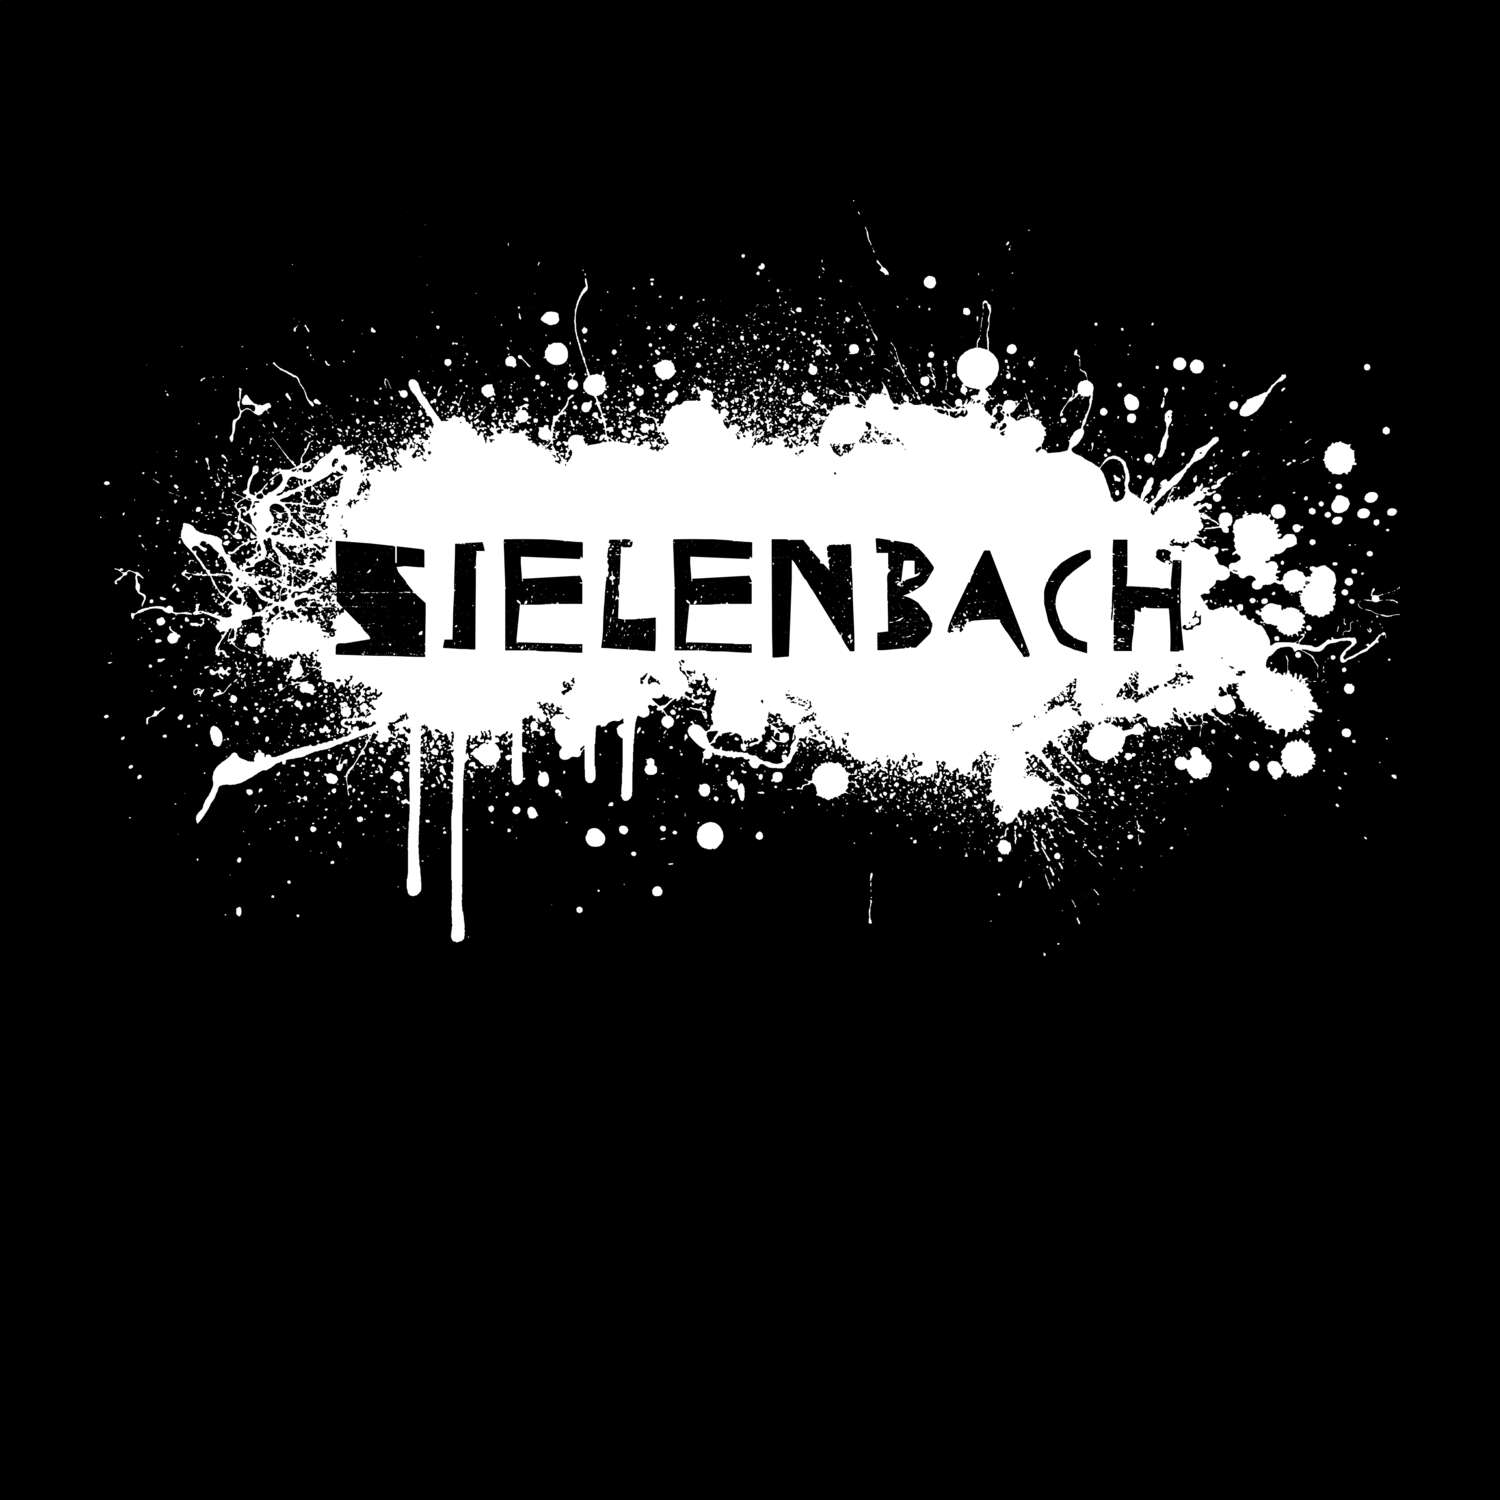 Sielenbach T-Shirt »Paint Splash Punk«